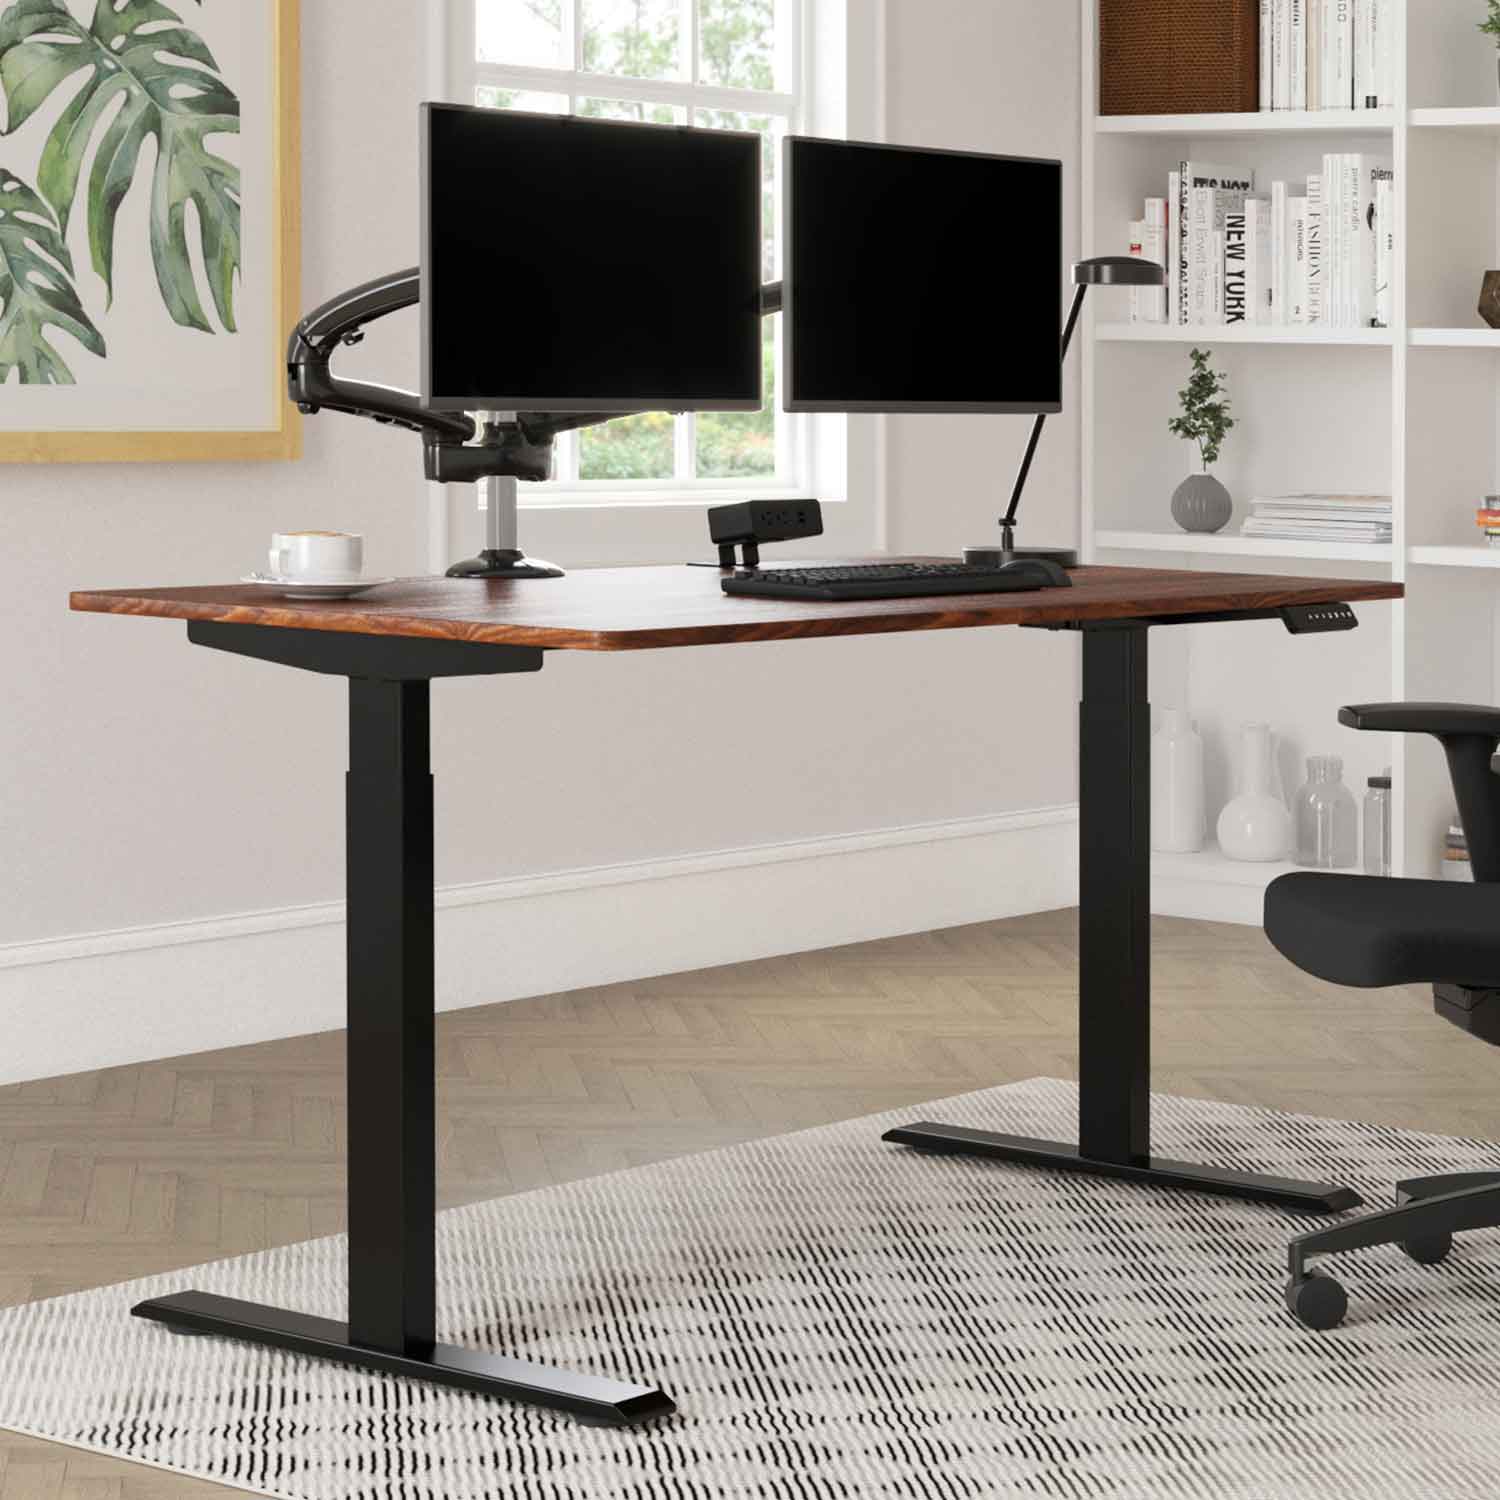 https://standdesk.com/cdn/shop/files/top-products-standing-desk.jpg?v=1699020321&width=1500